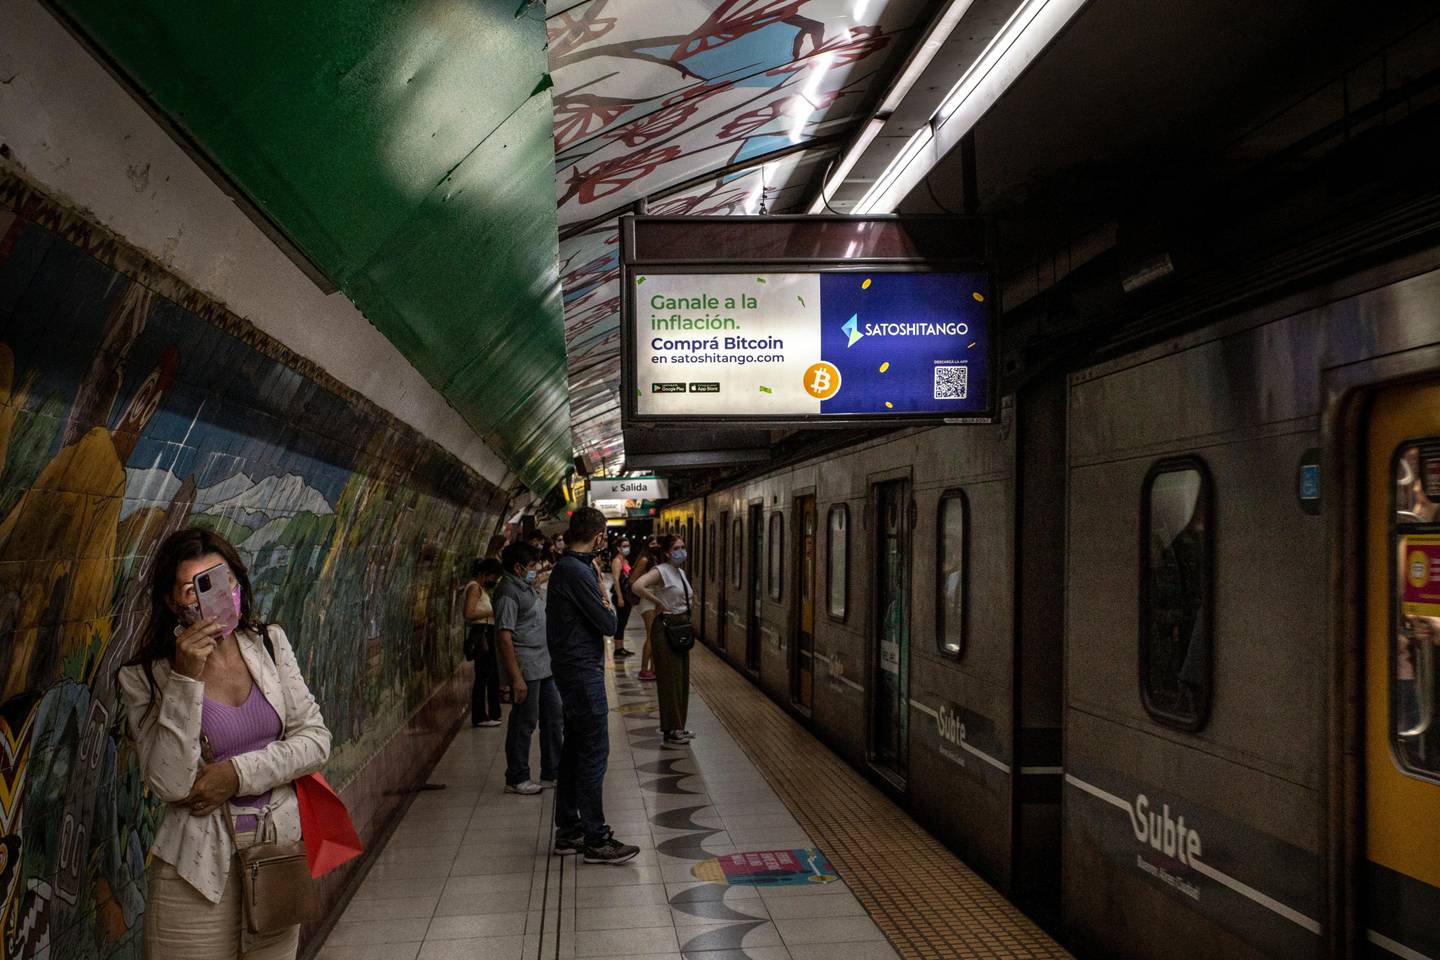 Um anúncio da Satoshitango em uma estação de metrô no bairro de Palermo.Fotógrafo: Sarah Pabst/Bloombergdfd